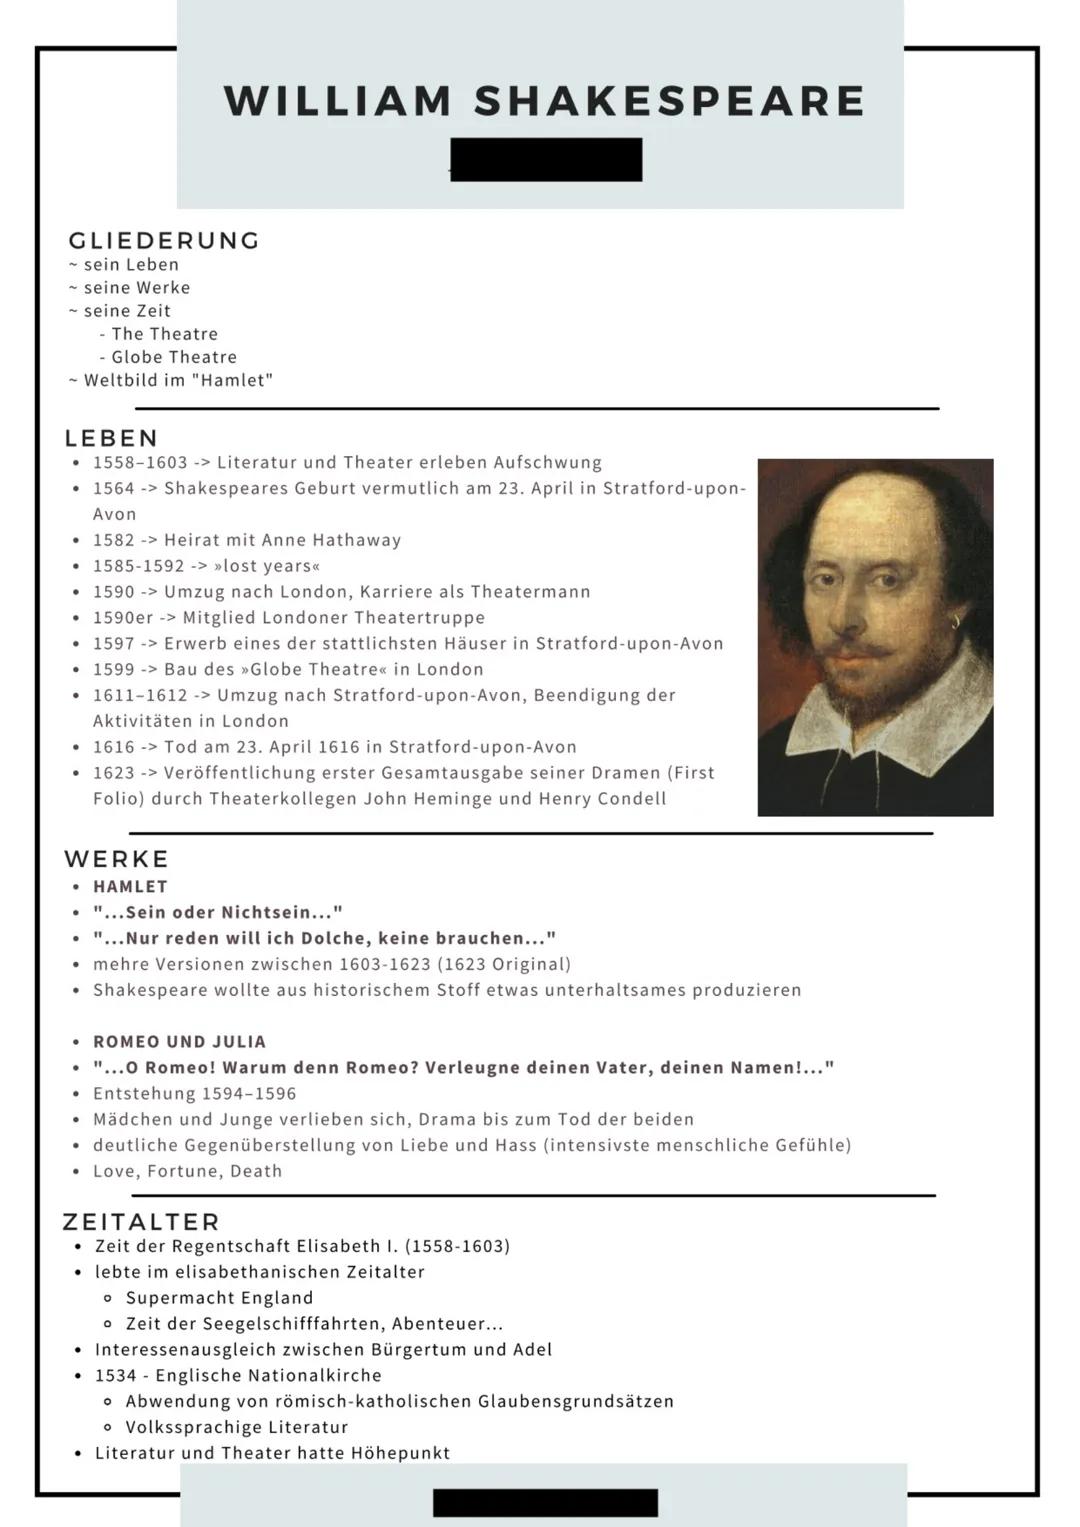 Werke des Deutsch-LK's: Themen und Bezüge im Überblick
William Shakespeare: Hamlet
Gattung: Drama
Literaturepoche: Renaissance, z.T. Aspekte